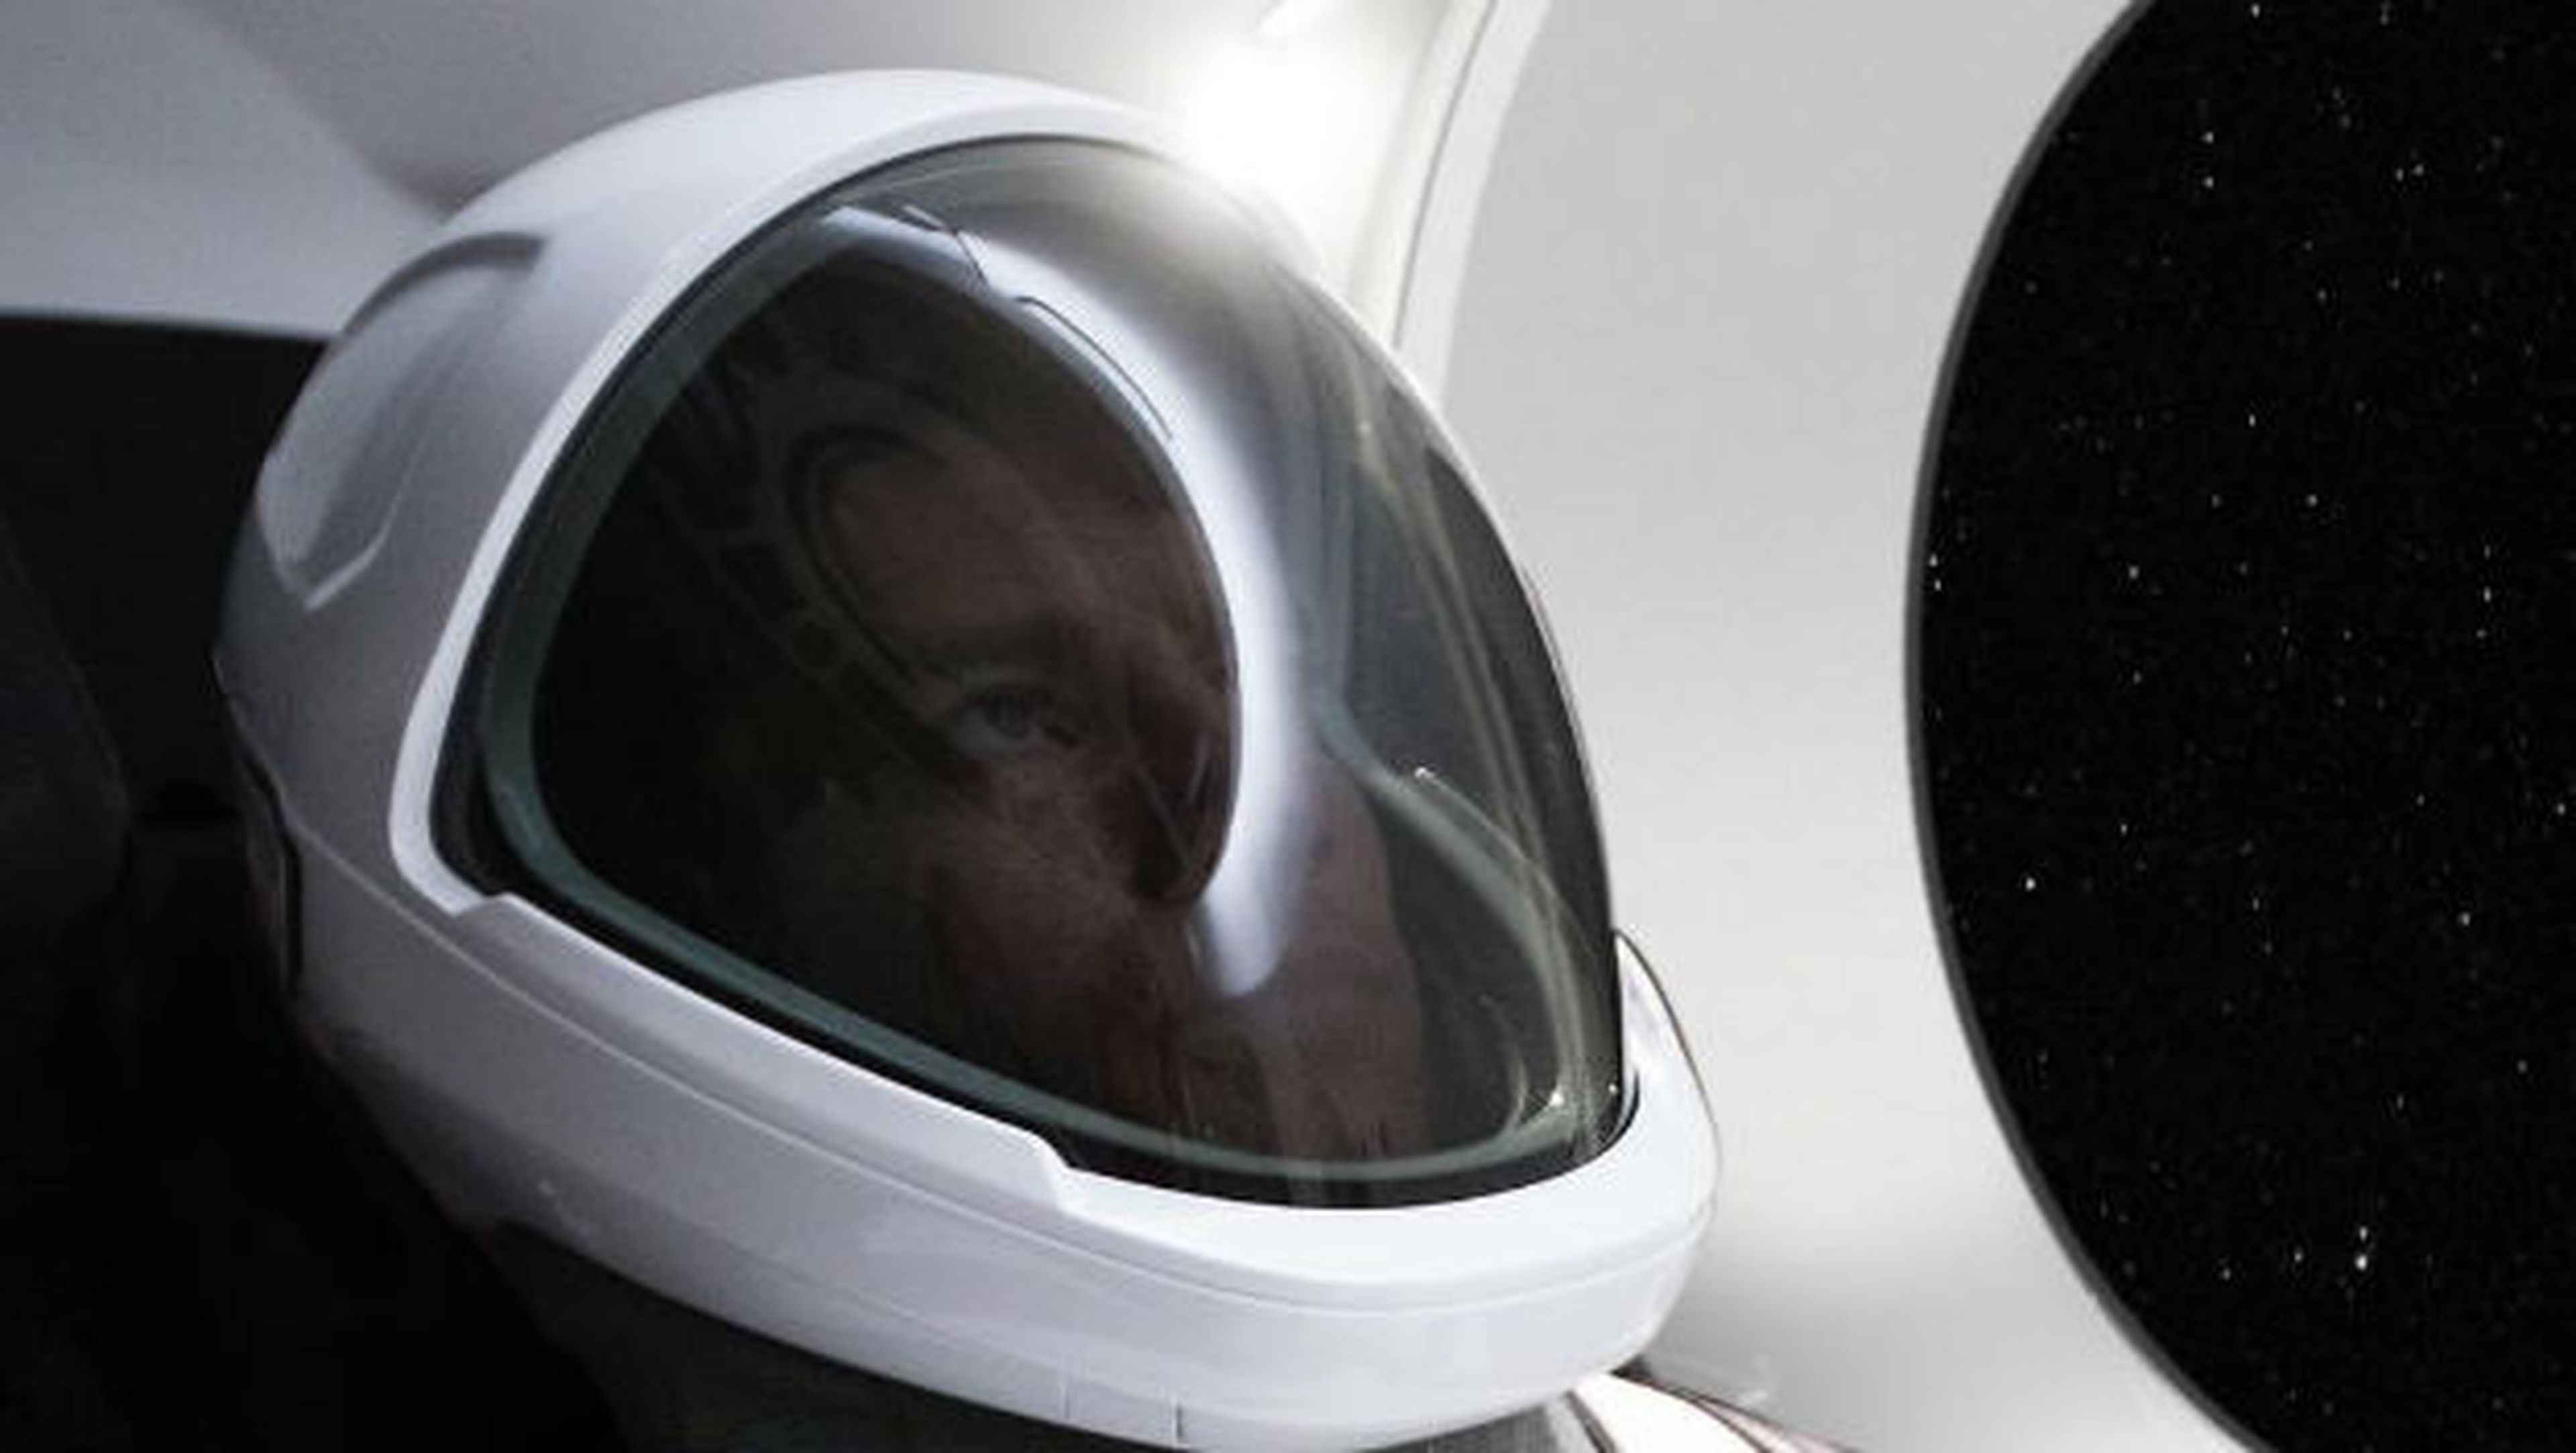 Elon Musk enseña por Instagram la primera foto de sus trajes espaciales